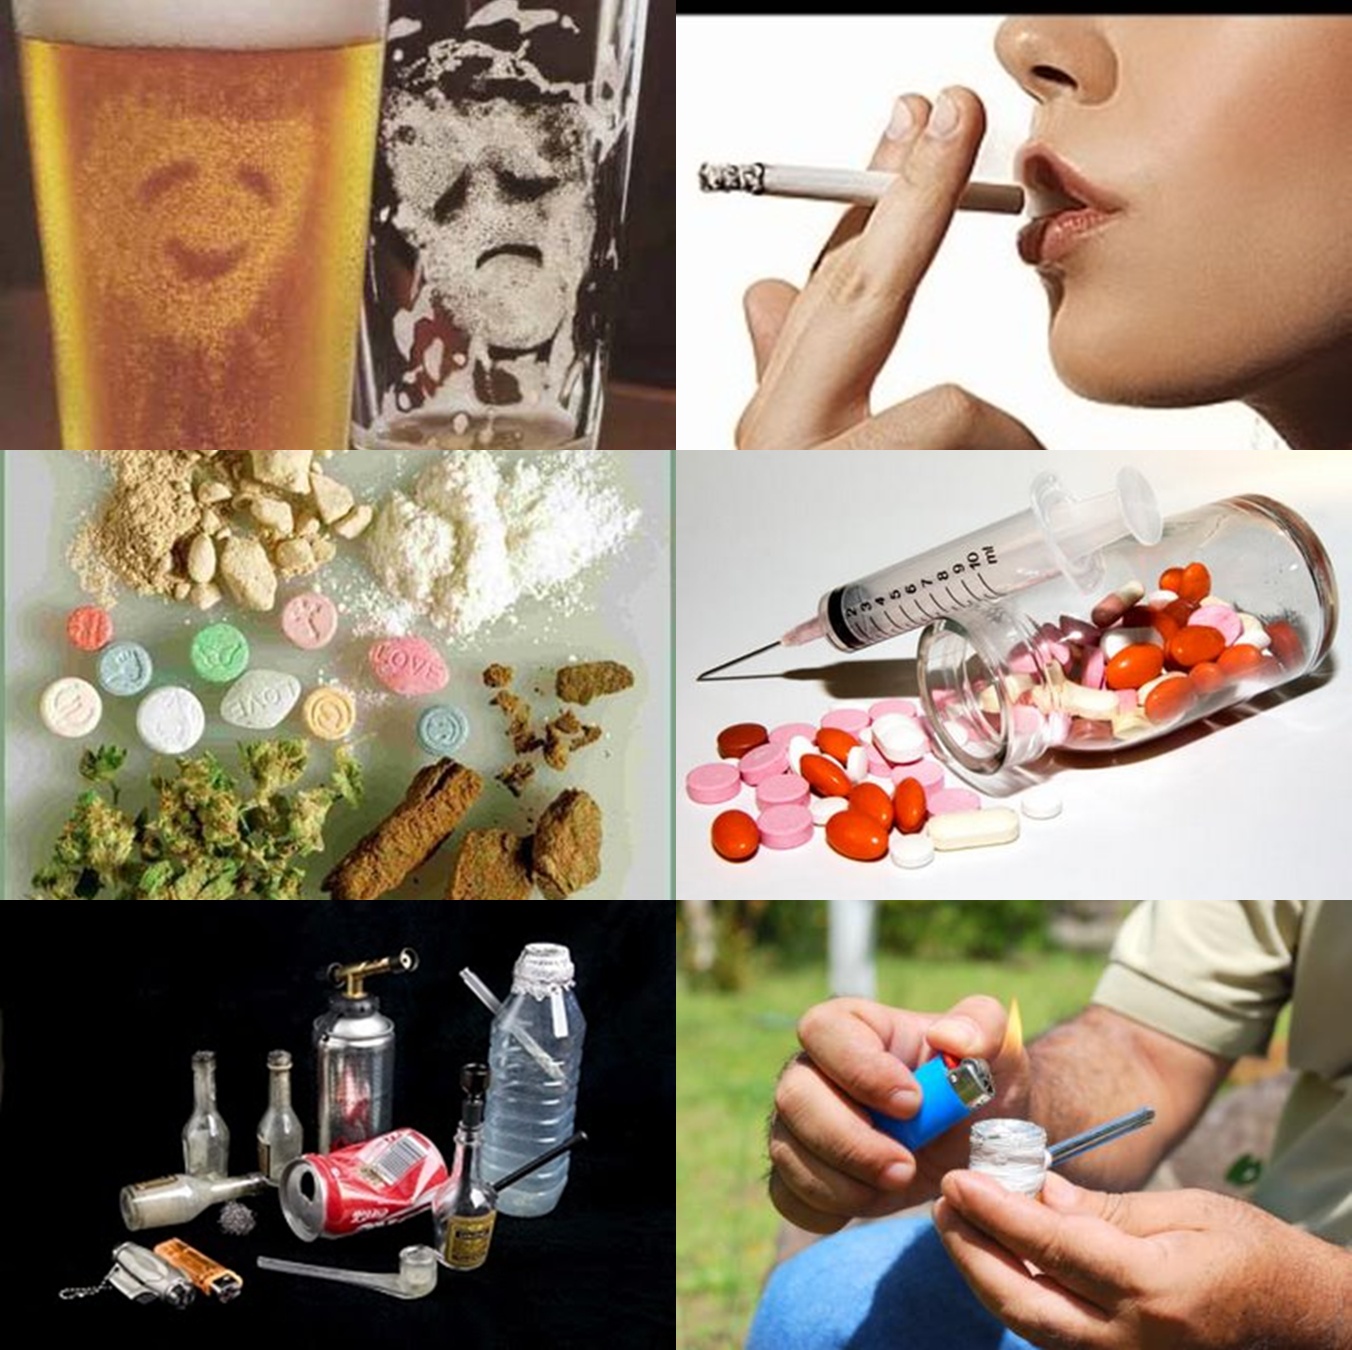 Arriba Foto Imagenes De Las Drogas En La Adolescencia Mirada Tensa